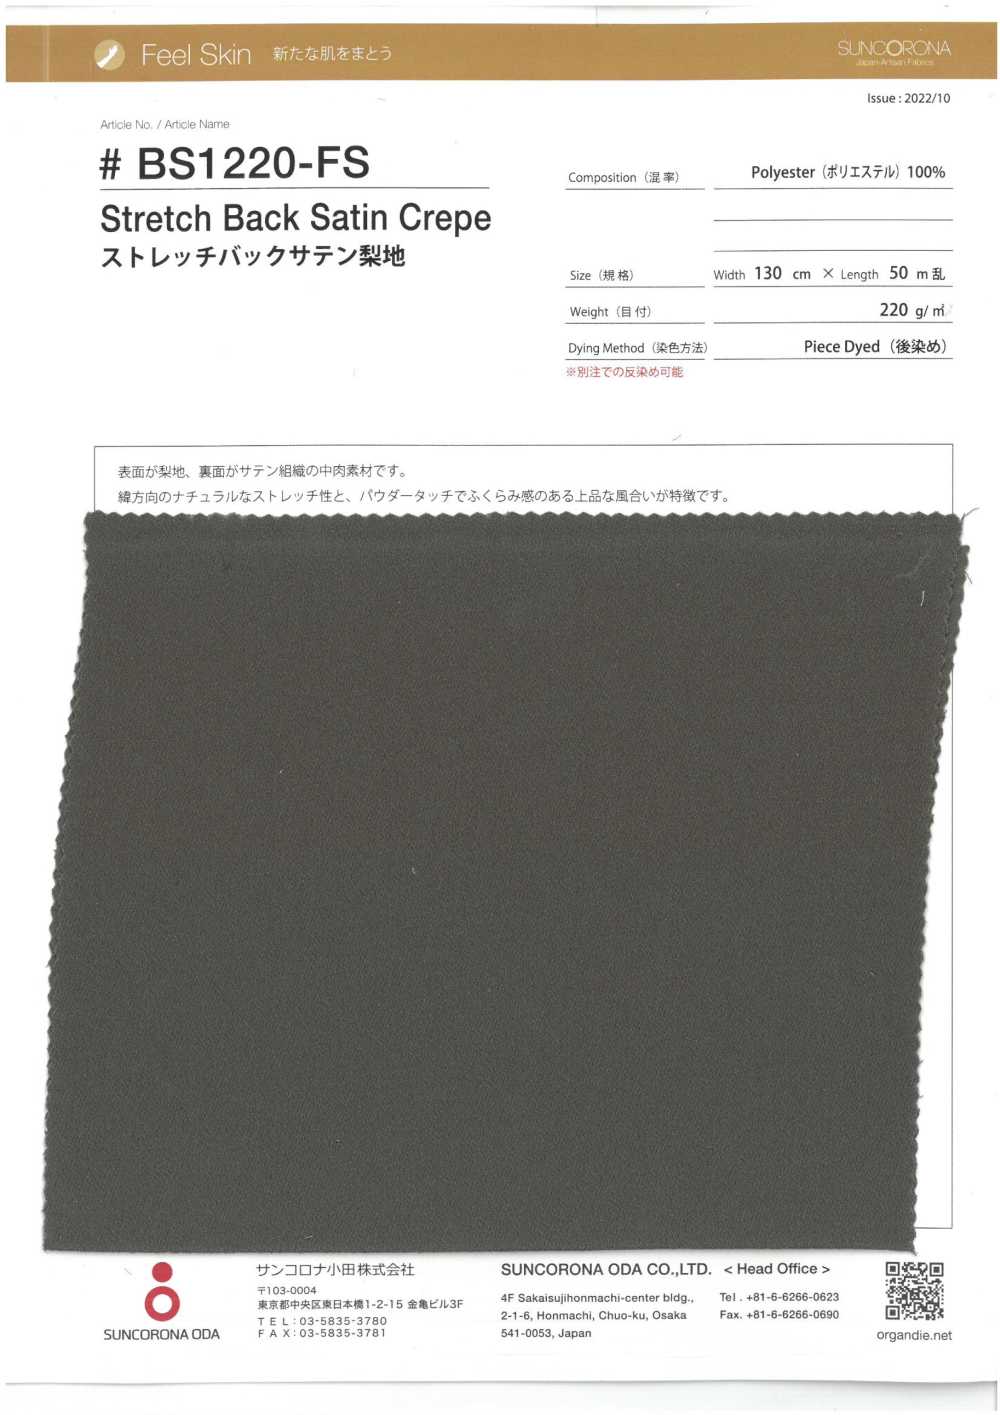 BS1220-FS Stretch Back Satin Sandwash Surface[Textile / Fabric] Suncorona Oda